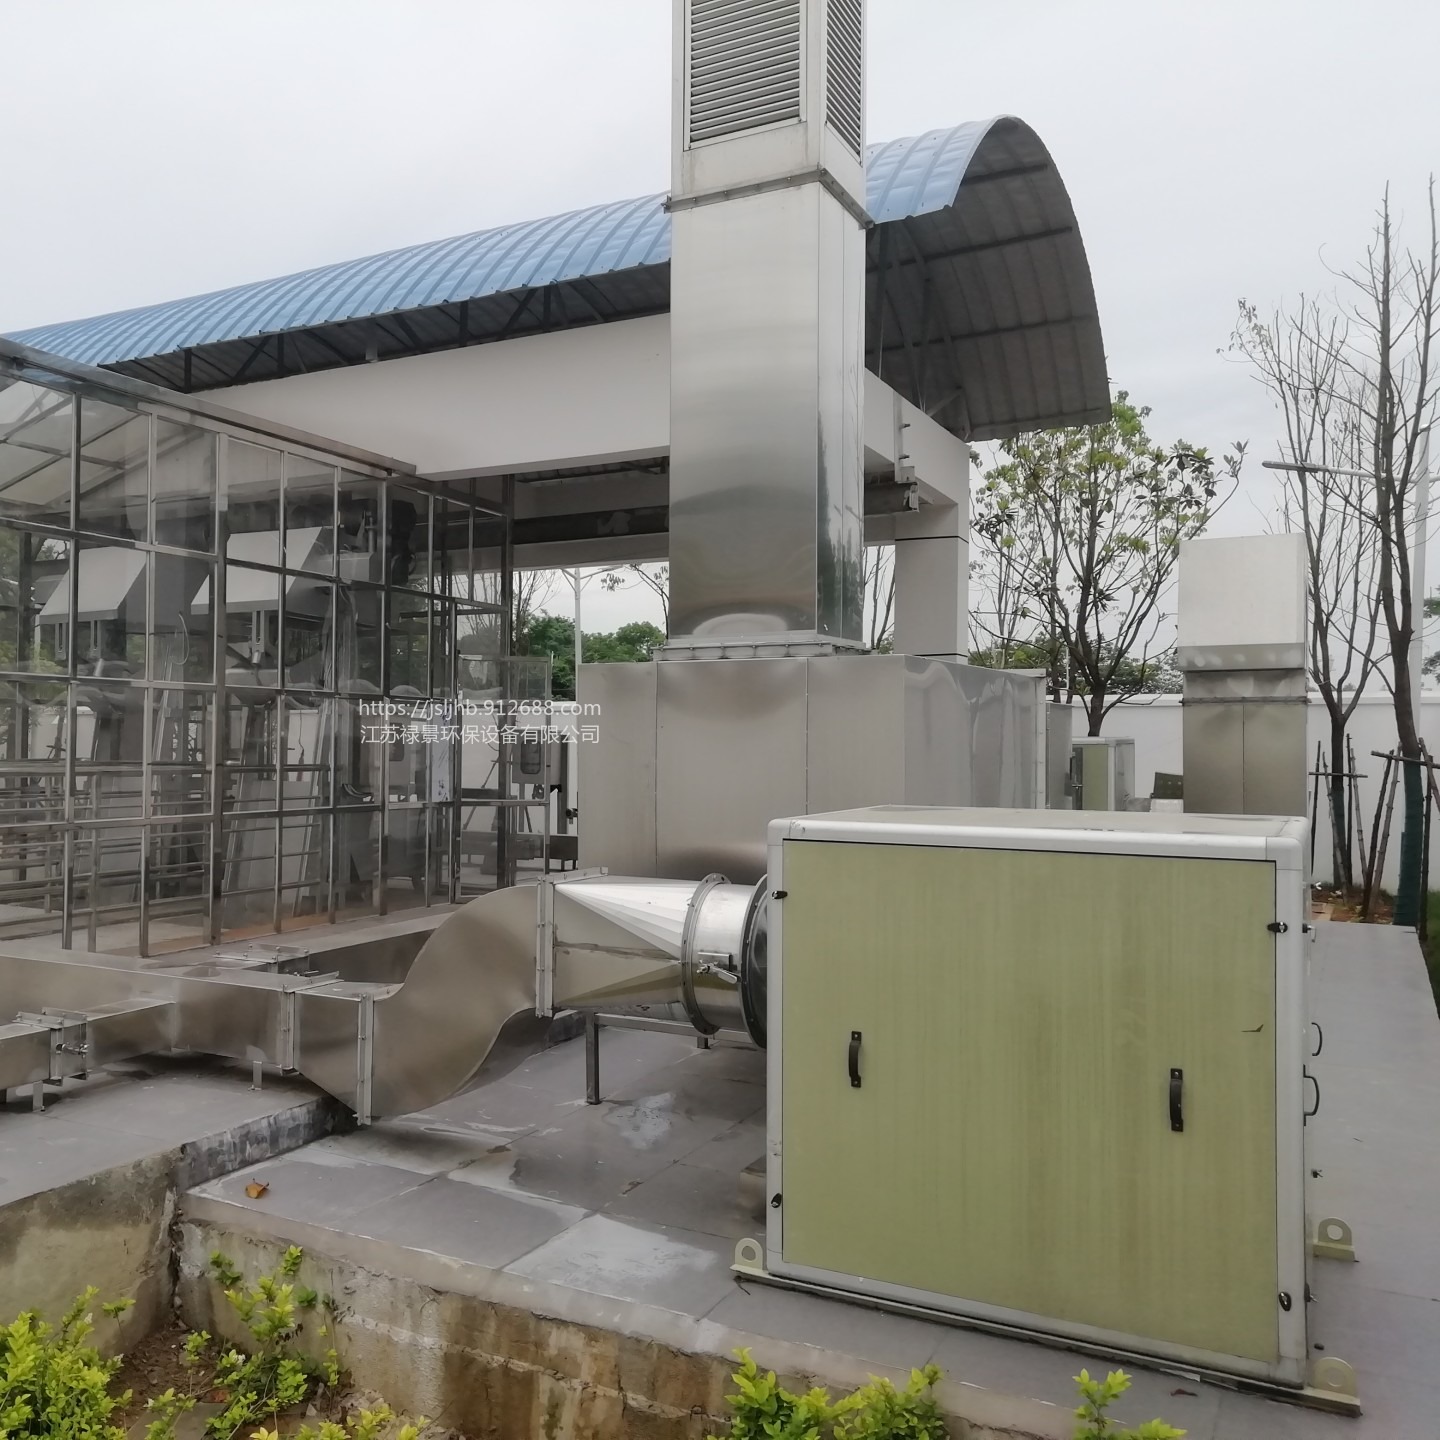 上海离子新风系统 污水泵站废气除臭设备 离子发生器图片